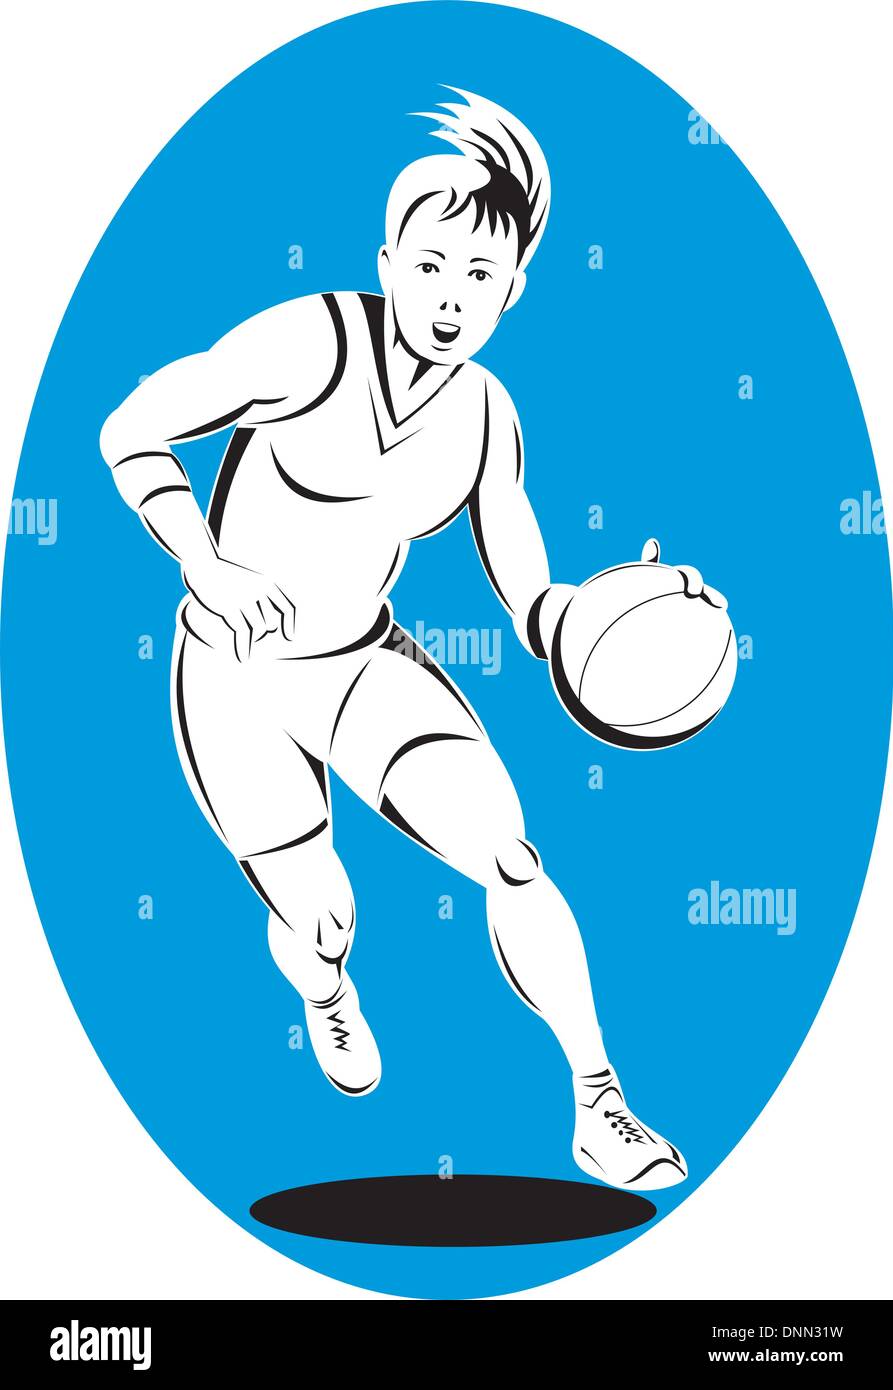 de un jugador de baloncesto pelota rebotando hecho en estilo retro Vector de stock - Alamy